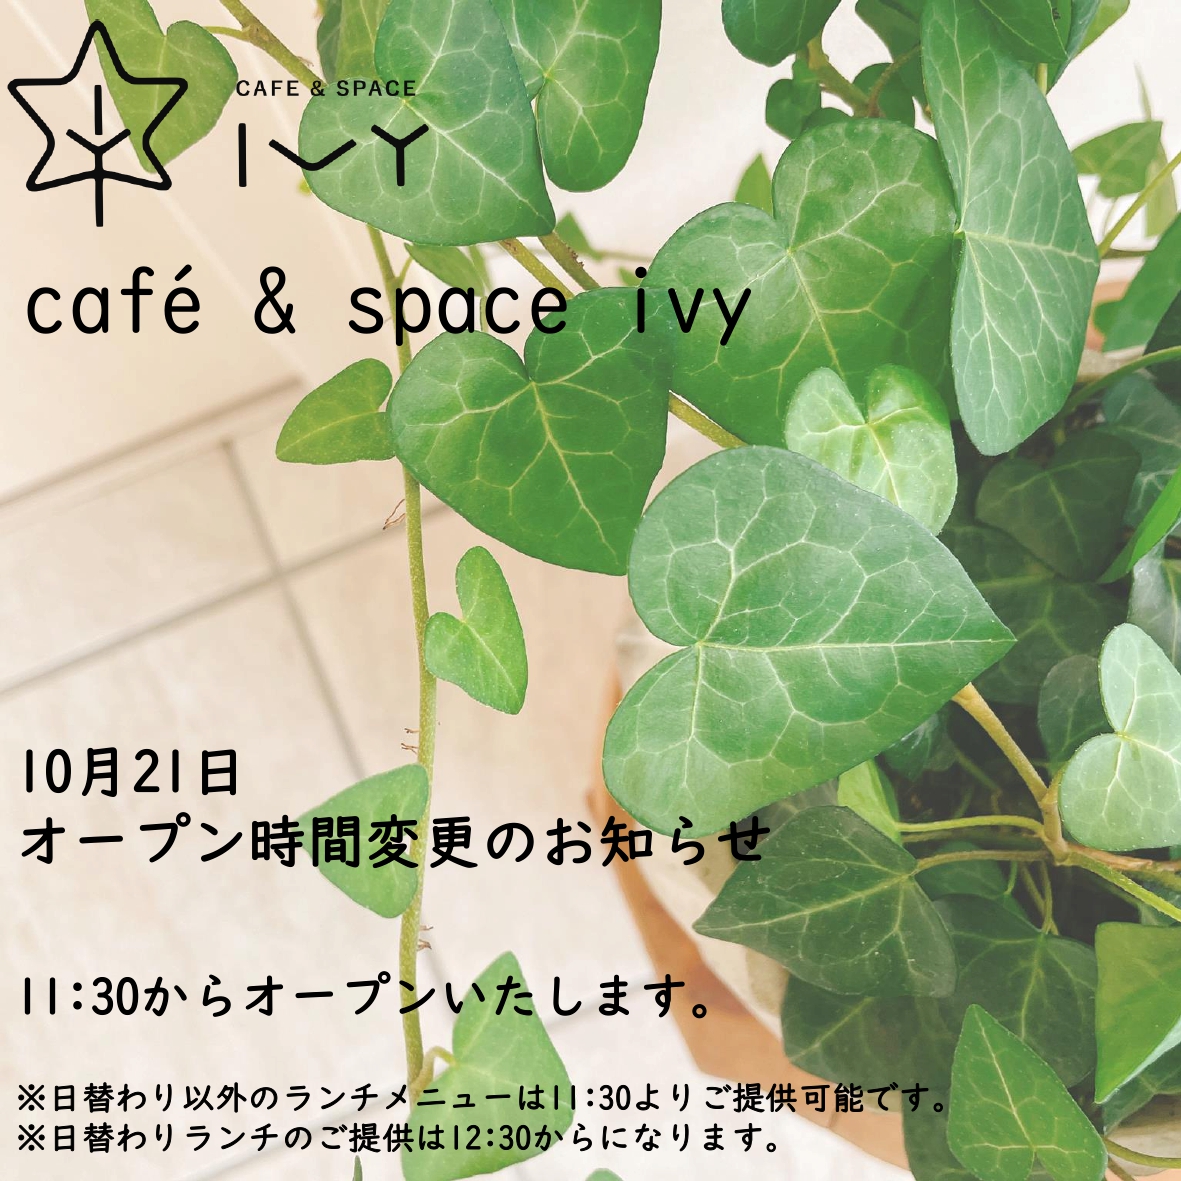 カフェオープン時間変更のお知らせ【10月21日】